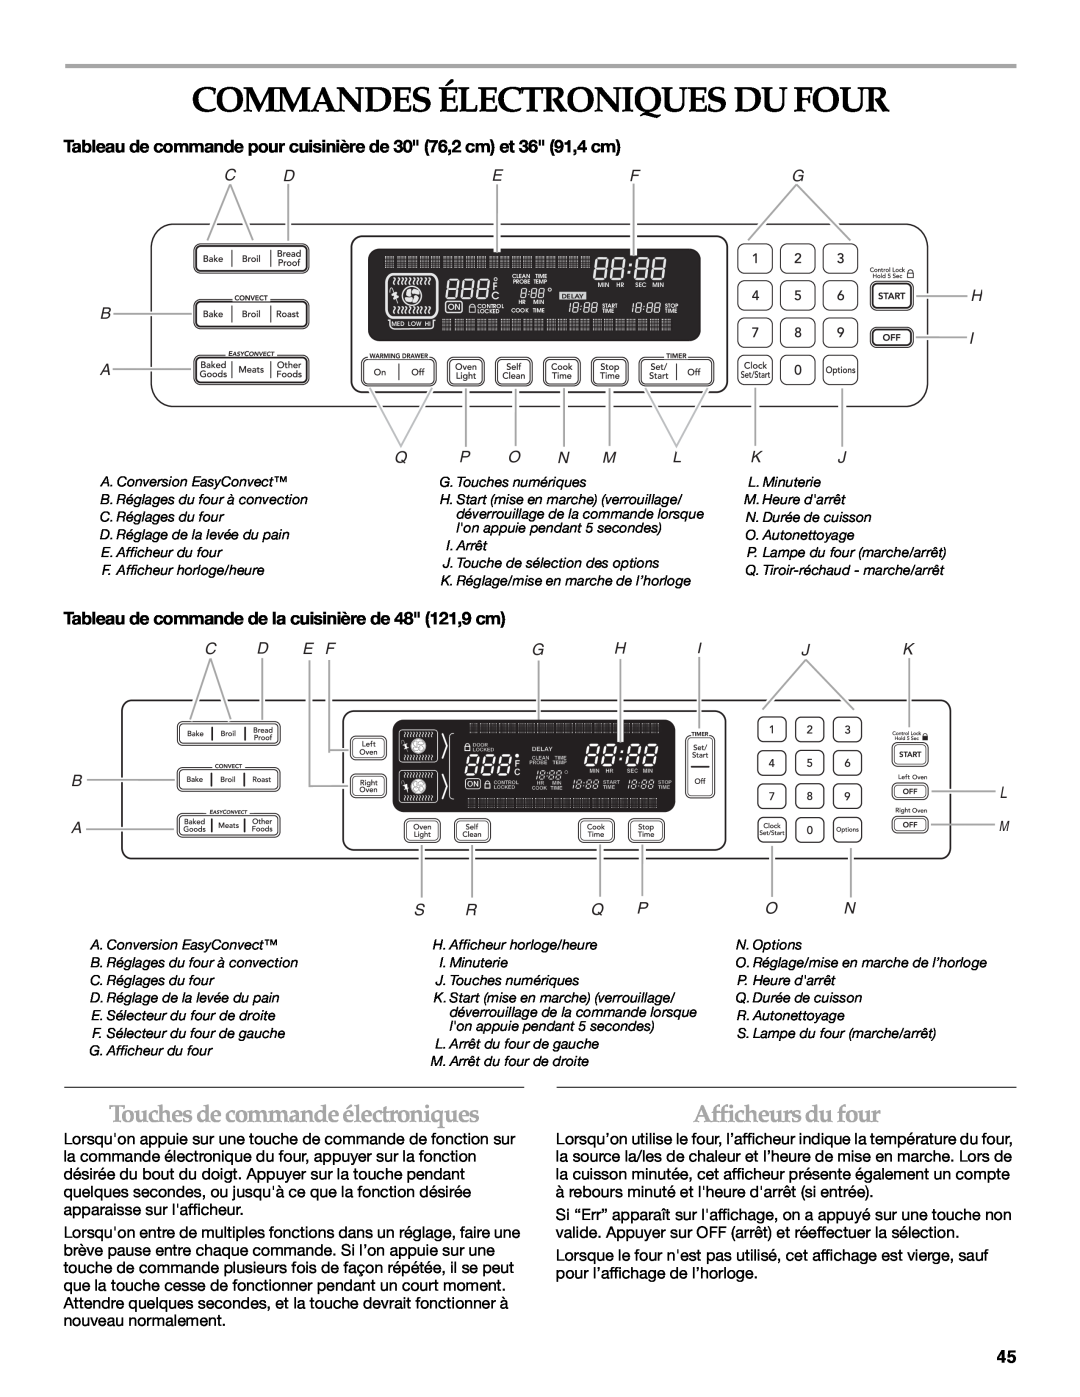 KitchenAid KDRS467 Commandes Électroniques Du Four, Touches decommandeélectroniques, Afficheurs du four, C D B A, S Rq P 